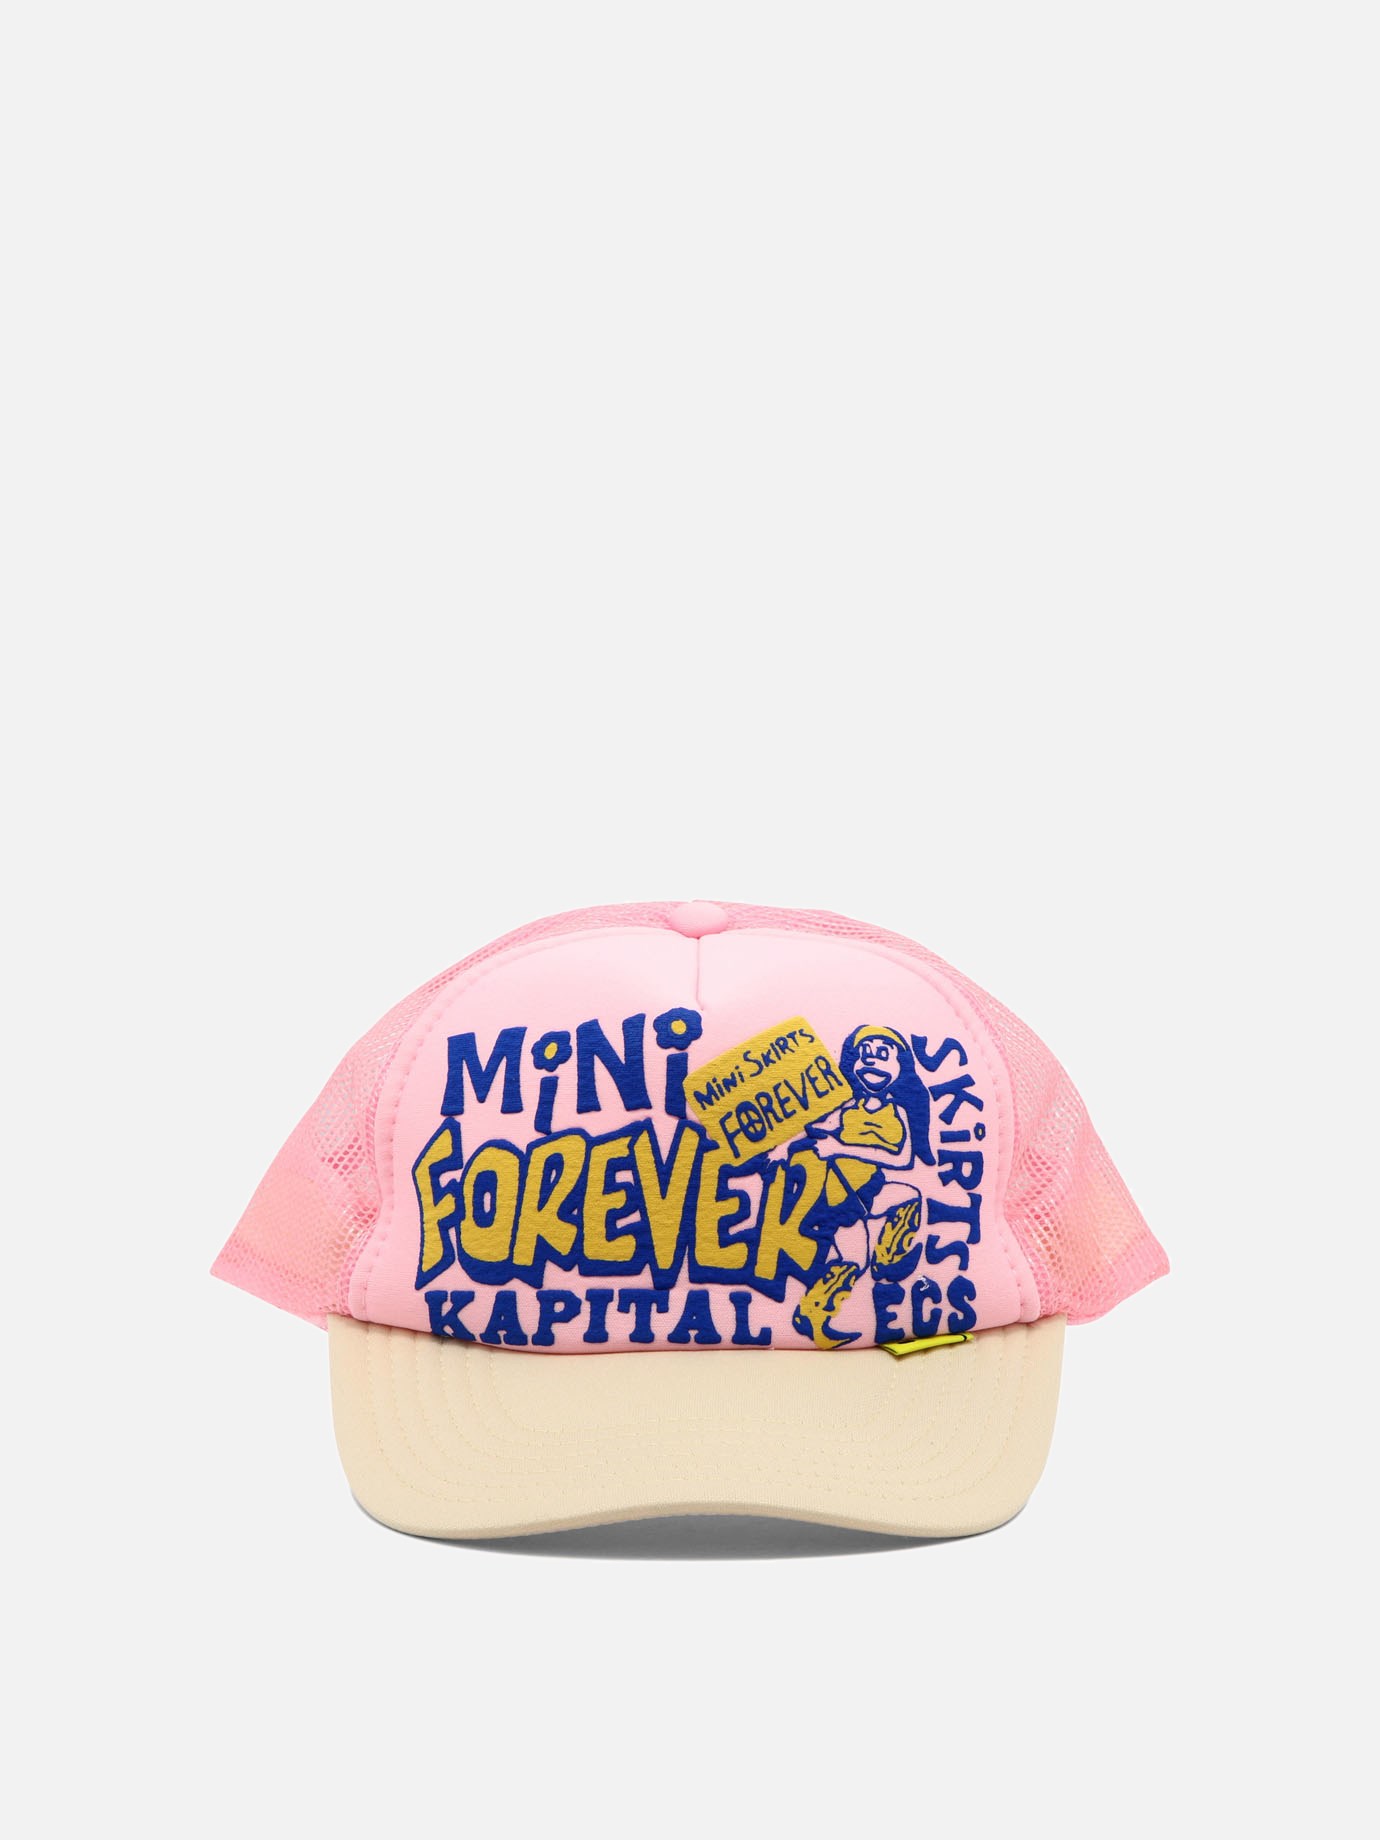  Mini Skirts Forever  trucker hatby Kapital - 1